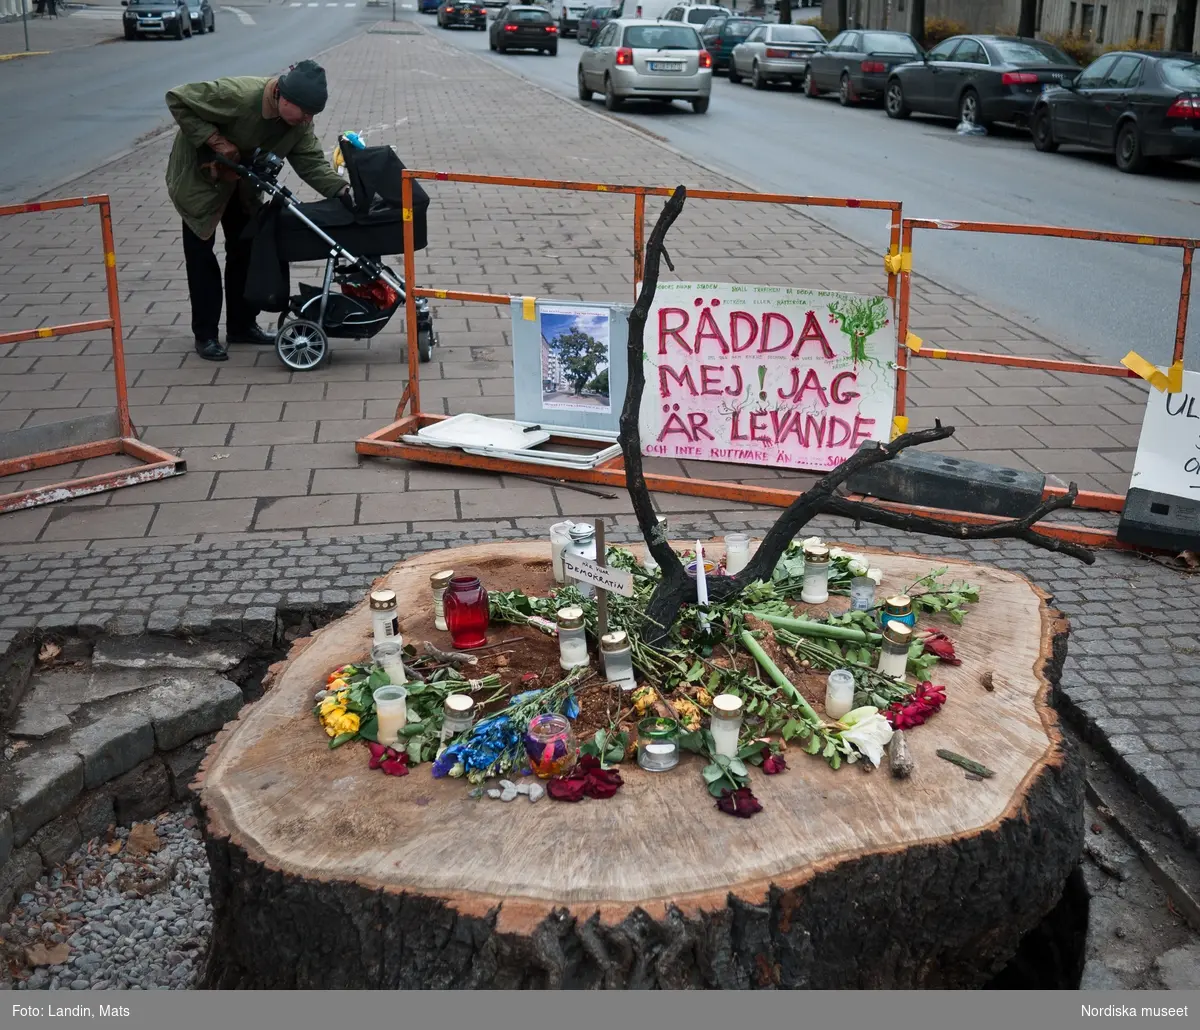 Åminnelse. Minnesplats över den nedsågade eken vid TV huset på Djurgården
Eken togs ner 25 nov 2011 under protester.